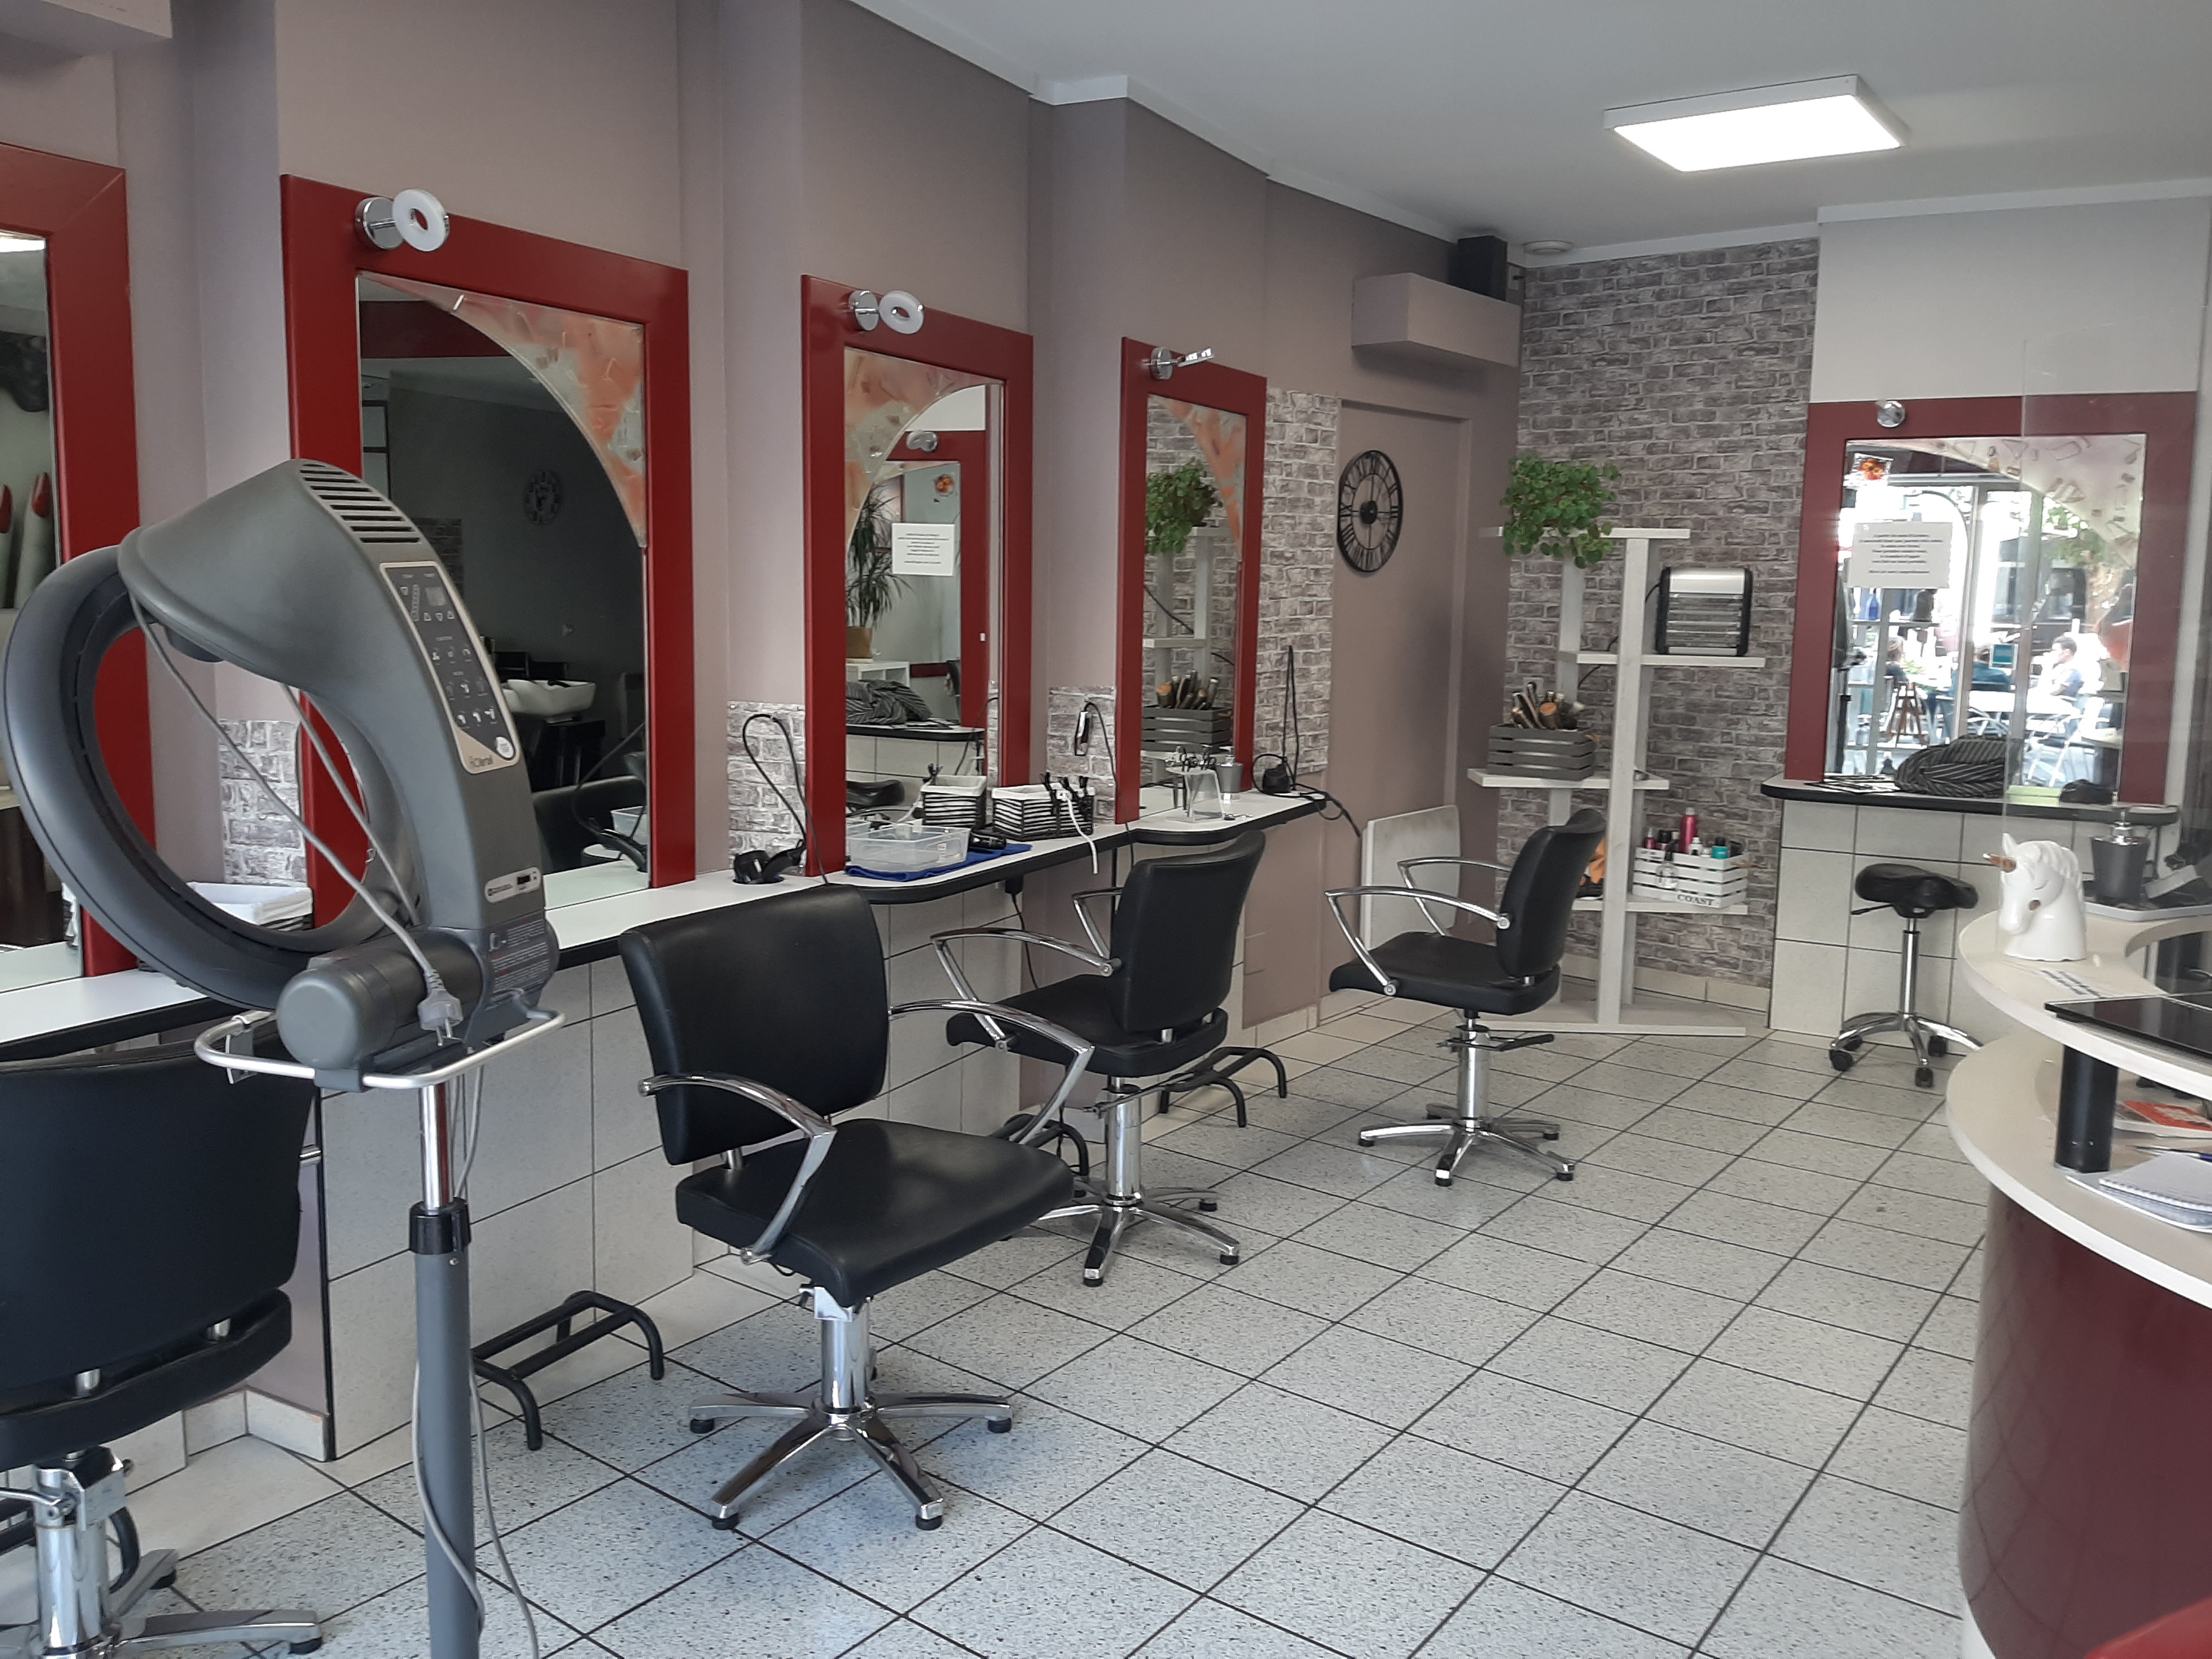 Vend cause santé, fond de commerce d'un salon de coiffure situé dans une charmante ville de l'Aveyron d'environ 5 000 habitants. Idéal pour une première installation
22 000€ à débattre